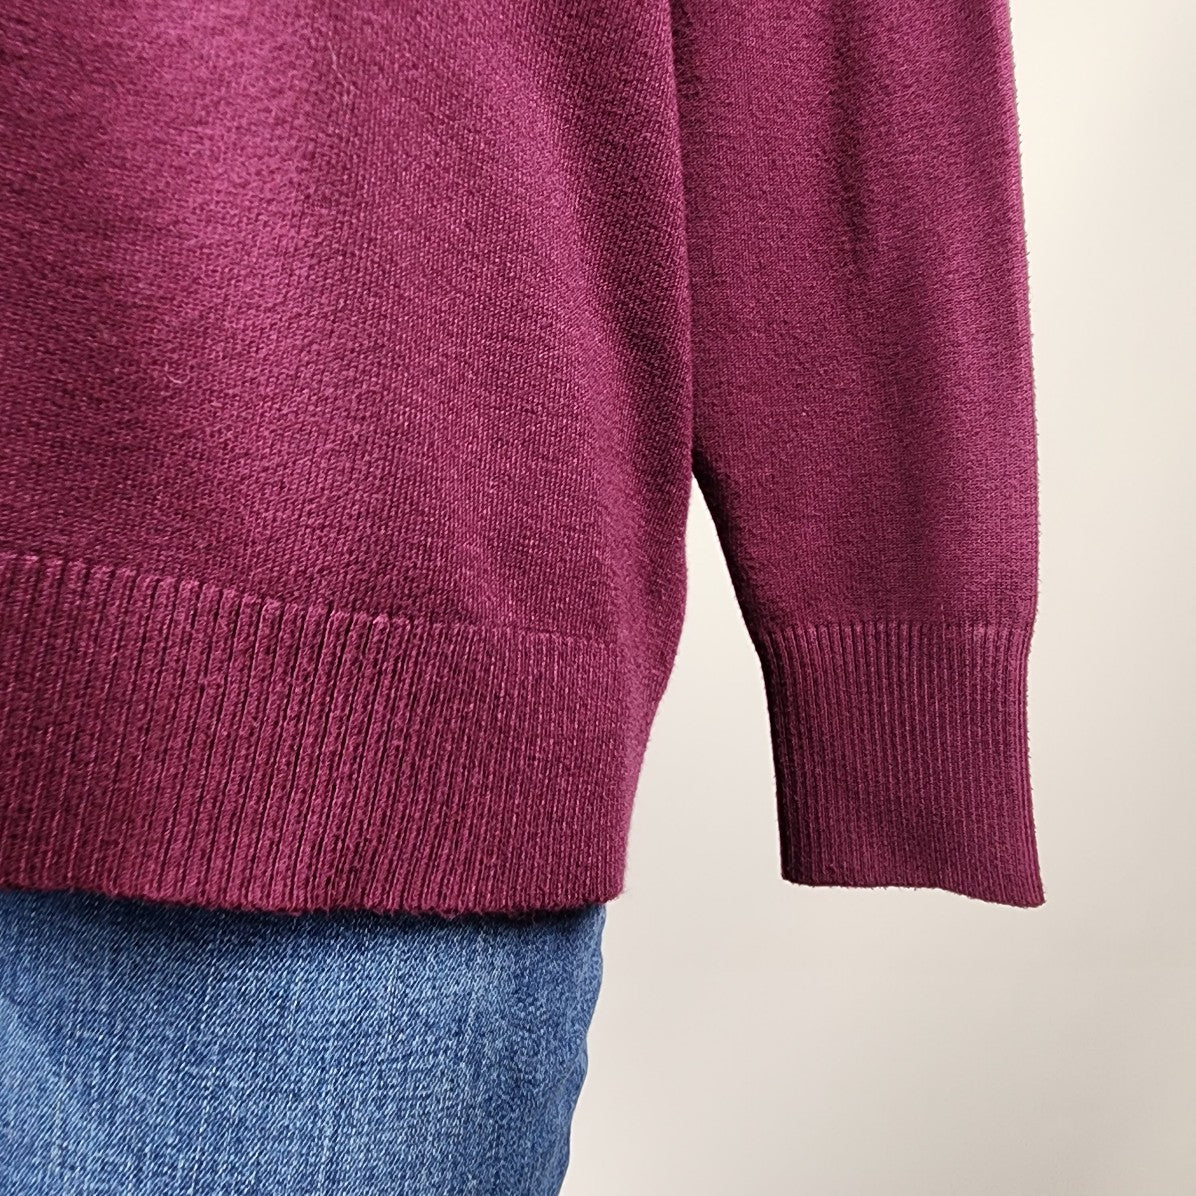 Zenana Purple V Neck Knit Sweater Size L